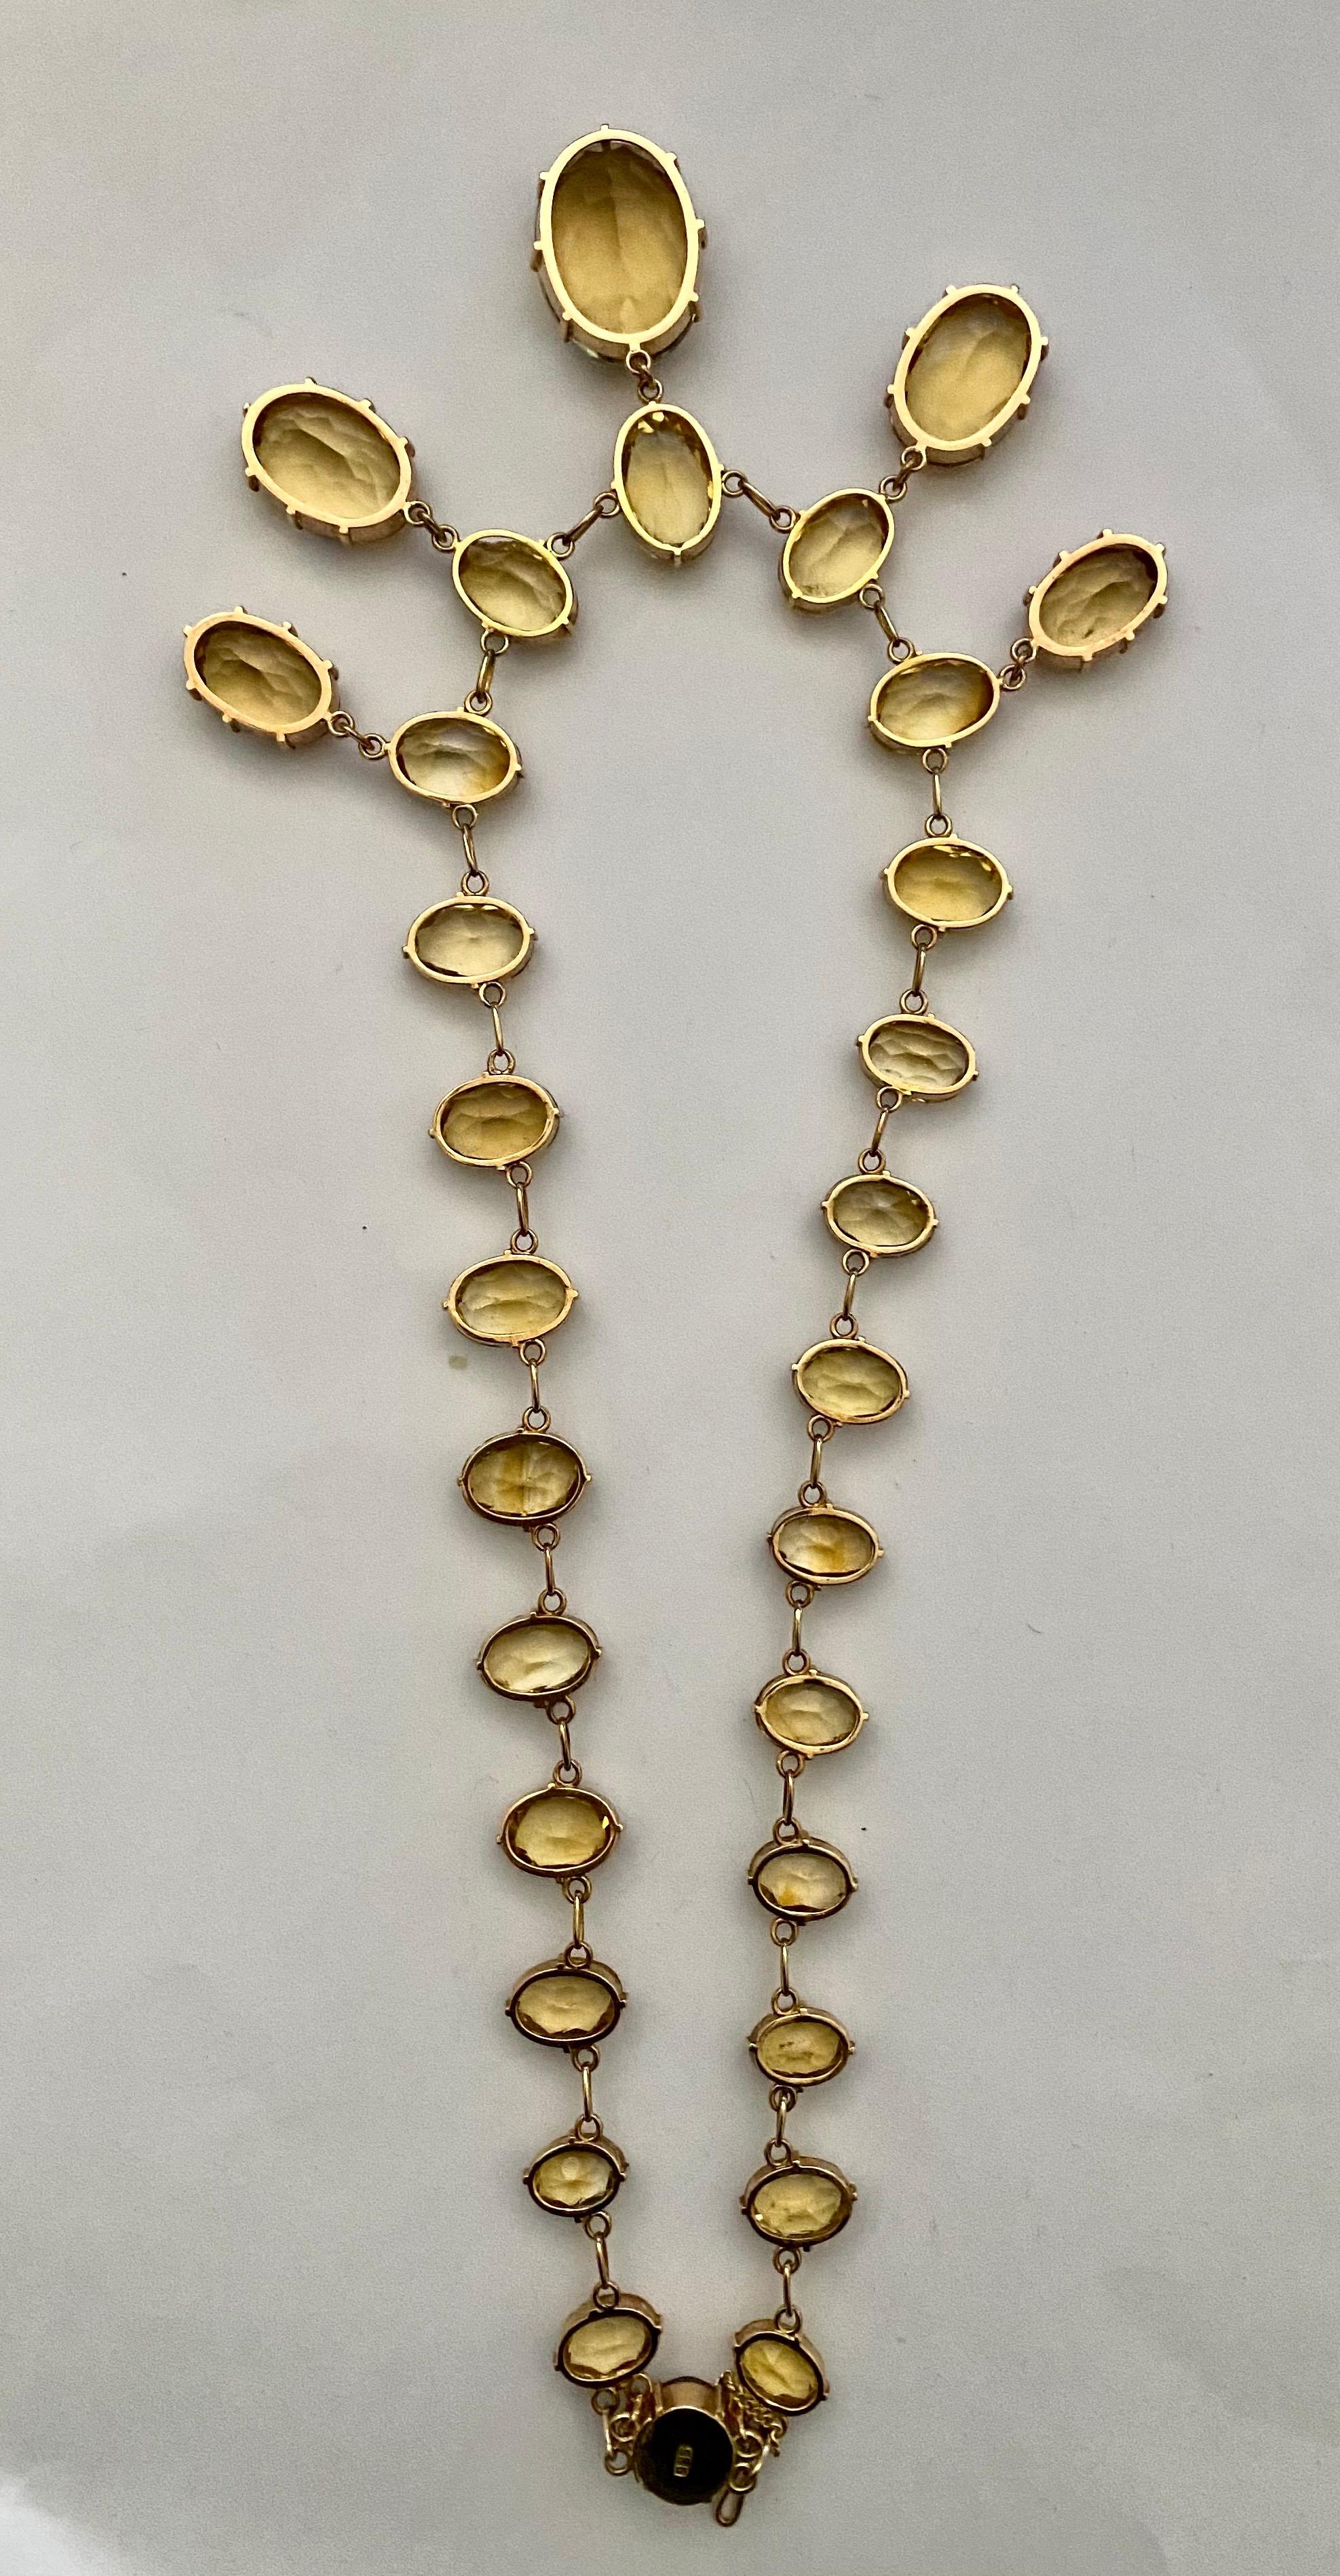 Superb Antique Citrine Riviere, 14k Gold Drop Necklace, Antique 1